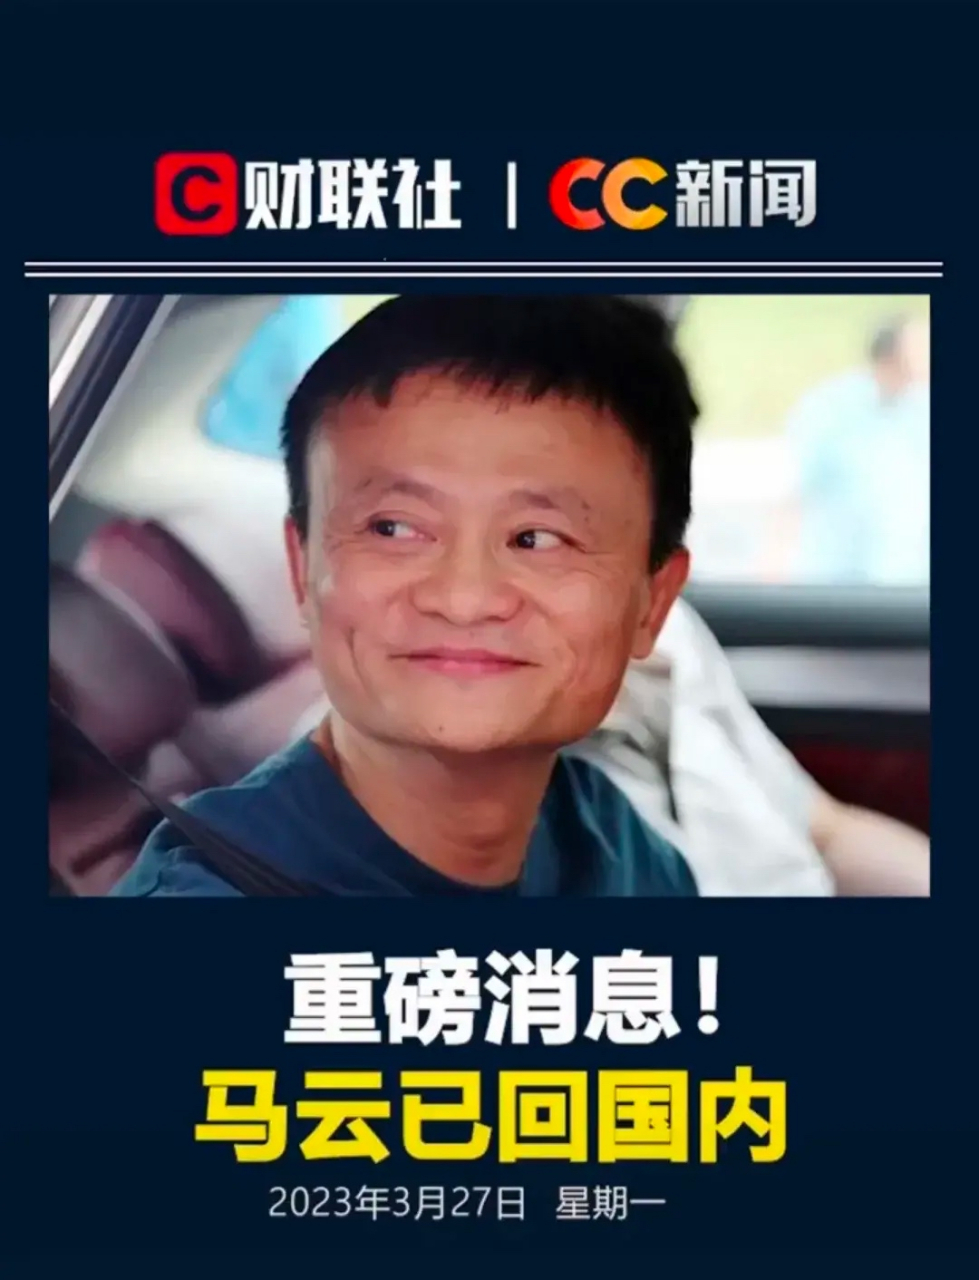 马云是中国人,事业在中国,回中国这不就是理所应当吗!